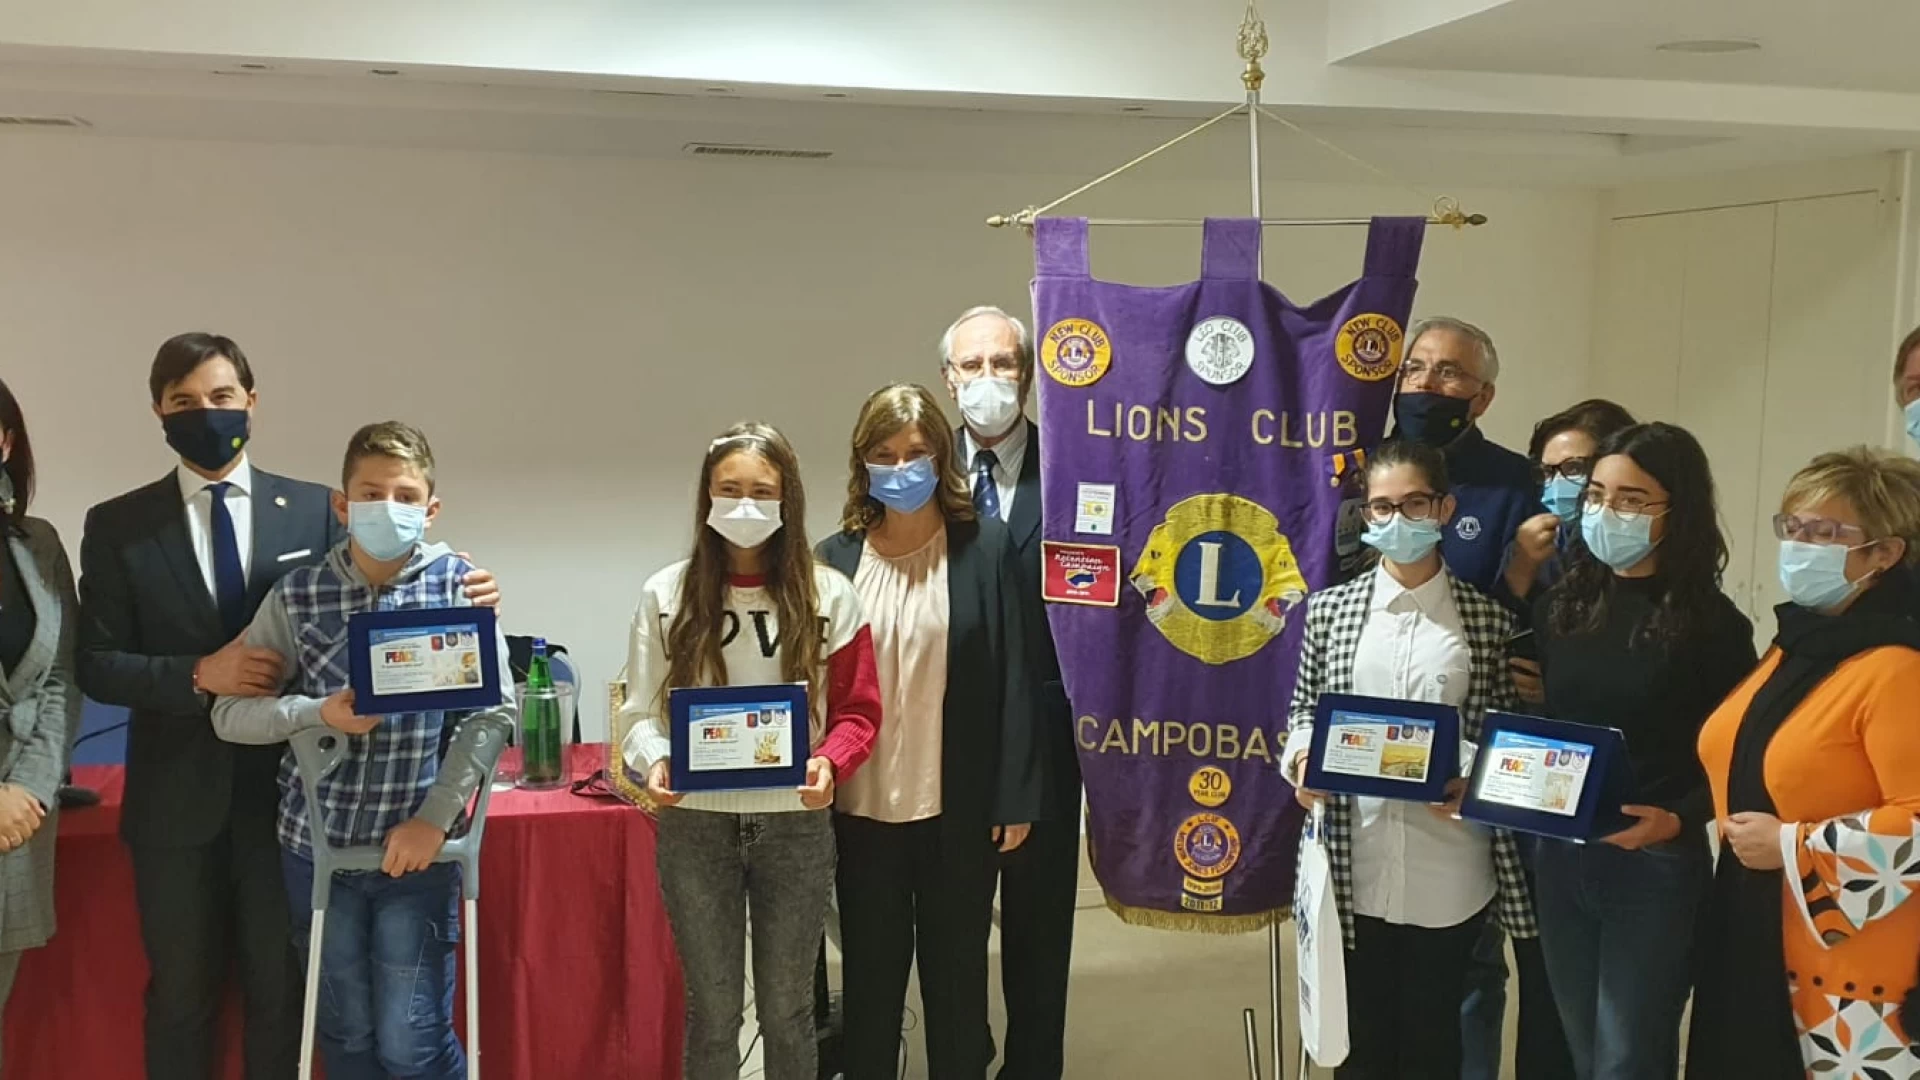 Un poster per la pace, il Lions Club Campobasso premia i vincitori.